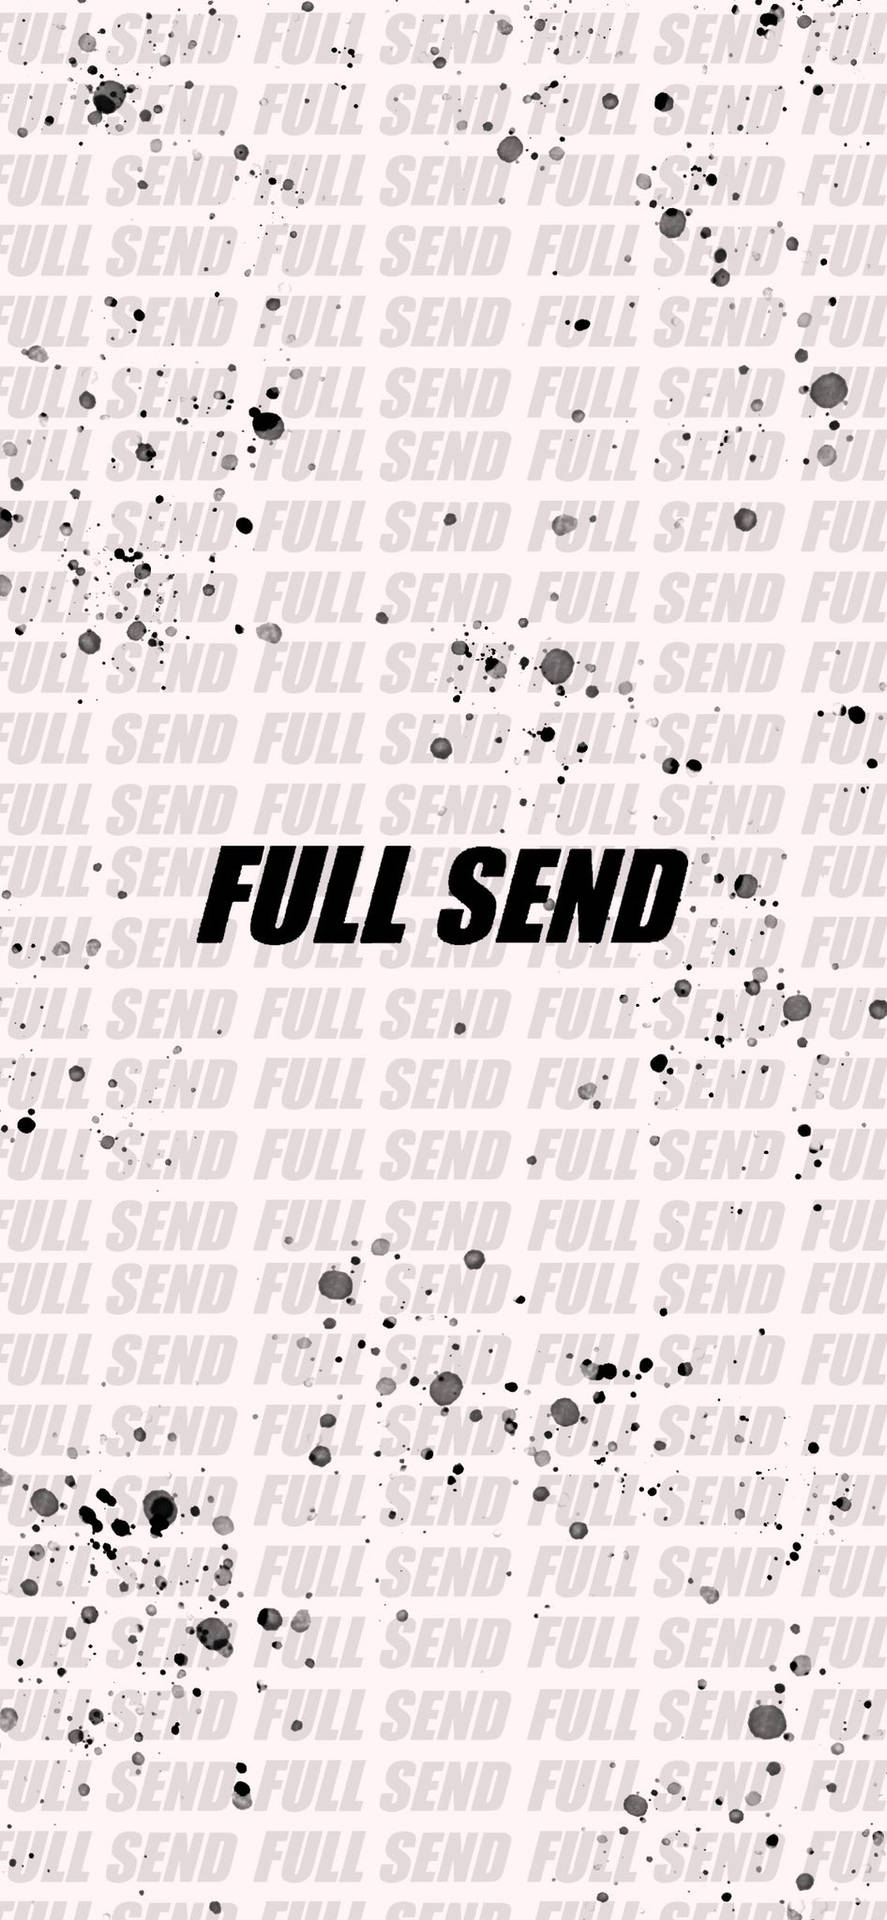 Fuld Send 946 X 2048 Wallpaper